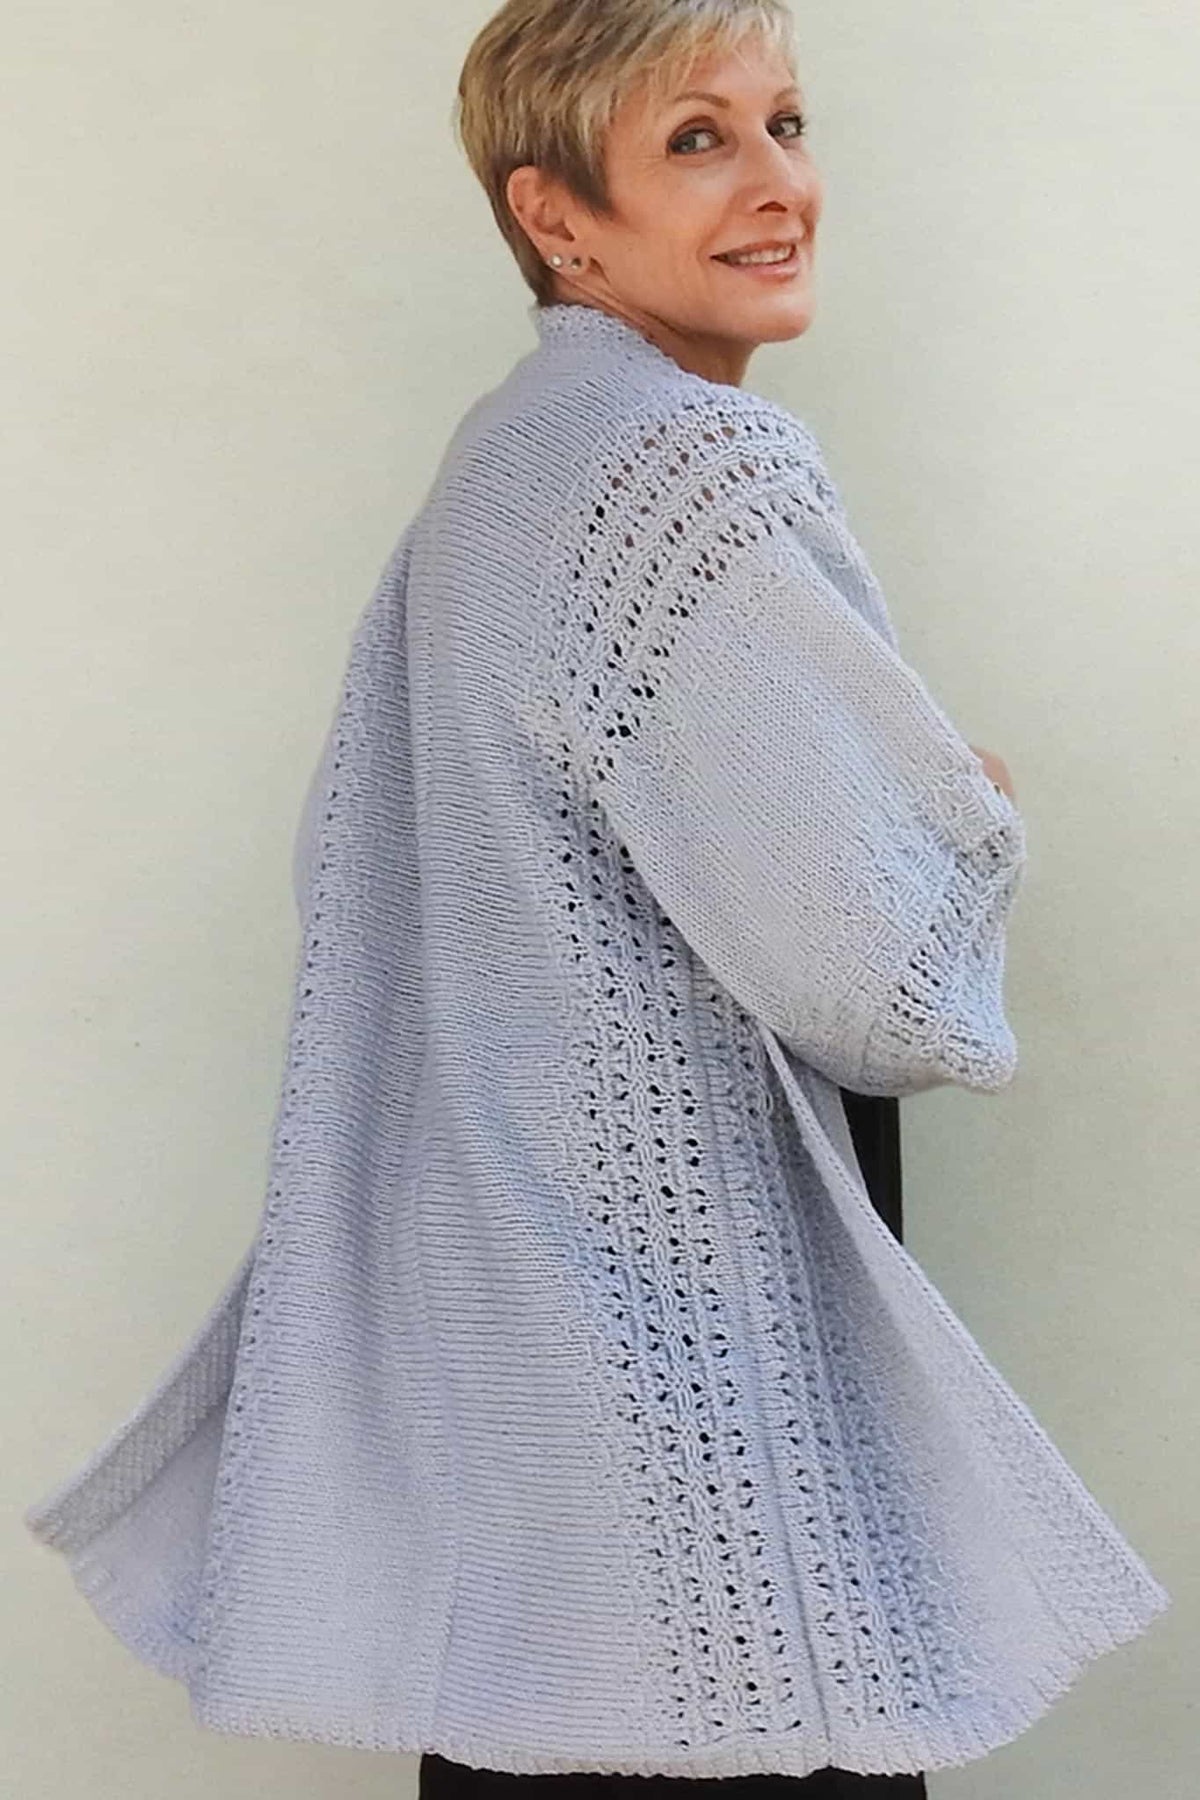 Woman's Kimono Sweater Knitting Pattern